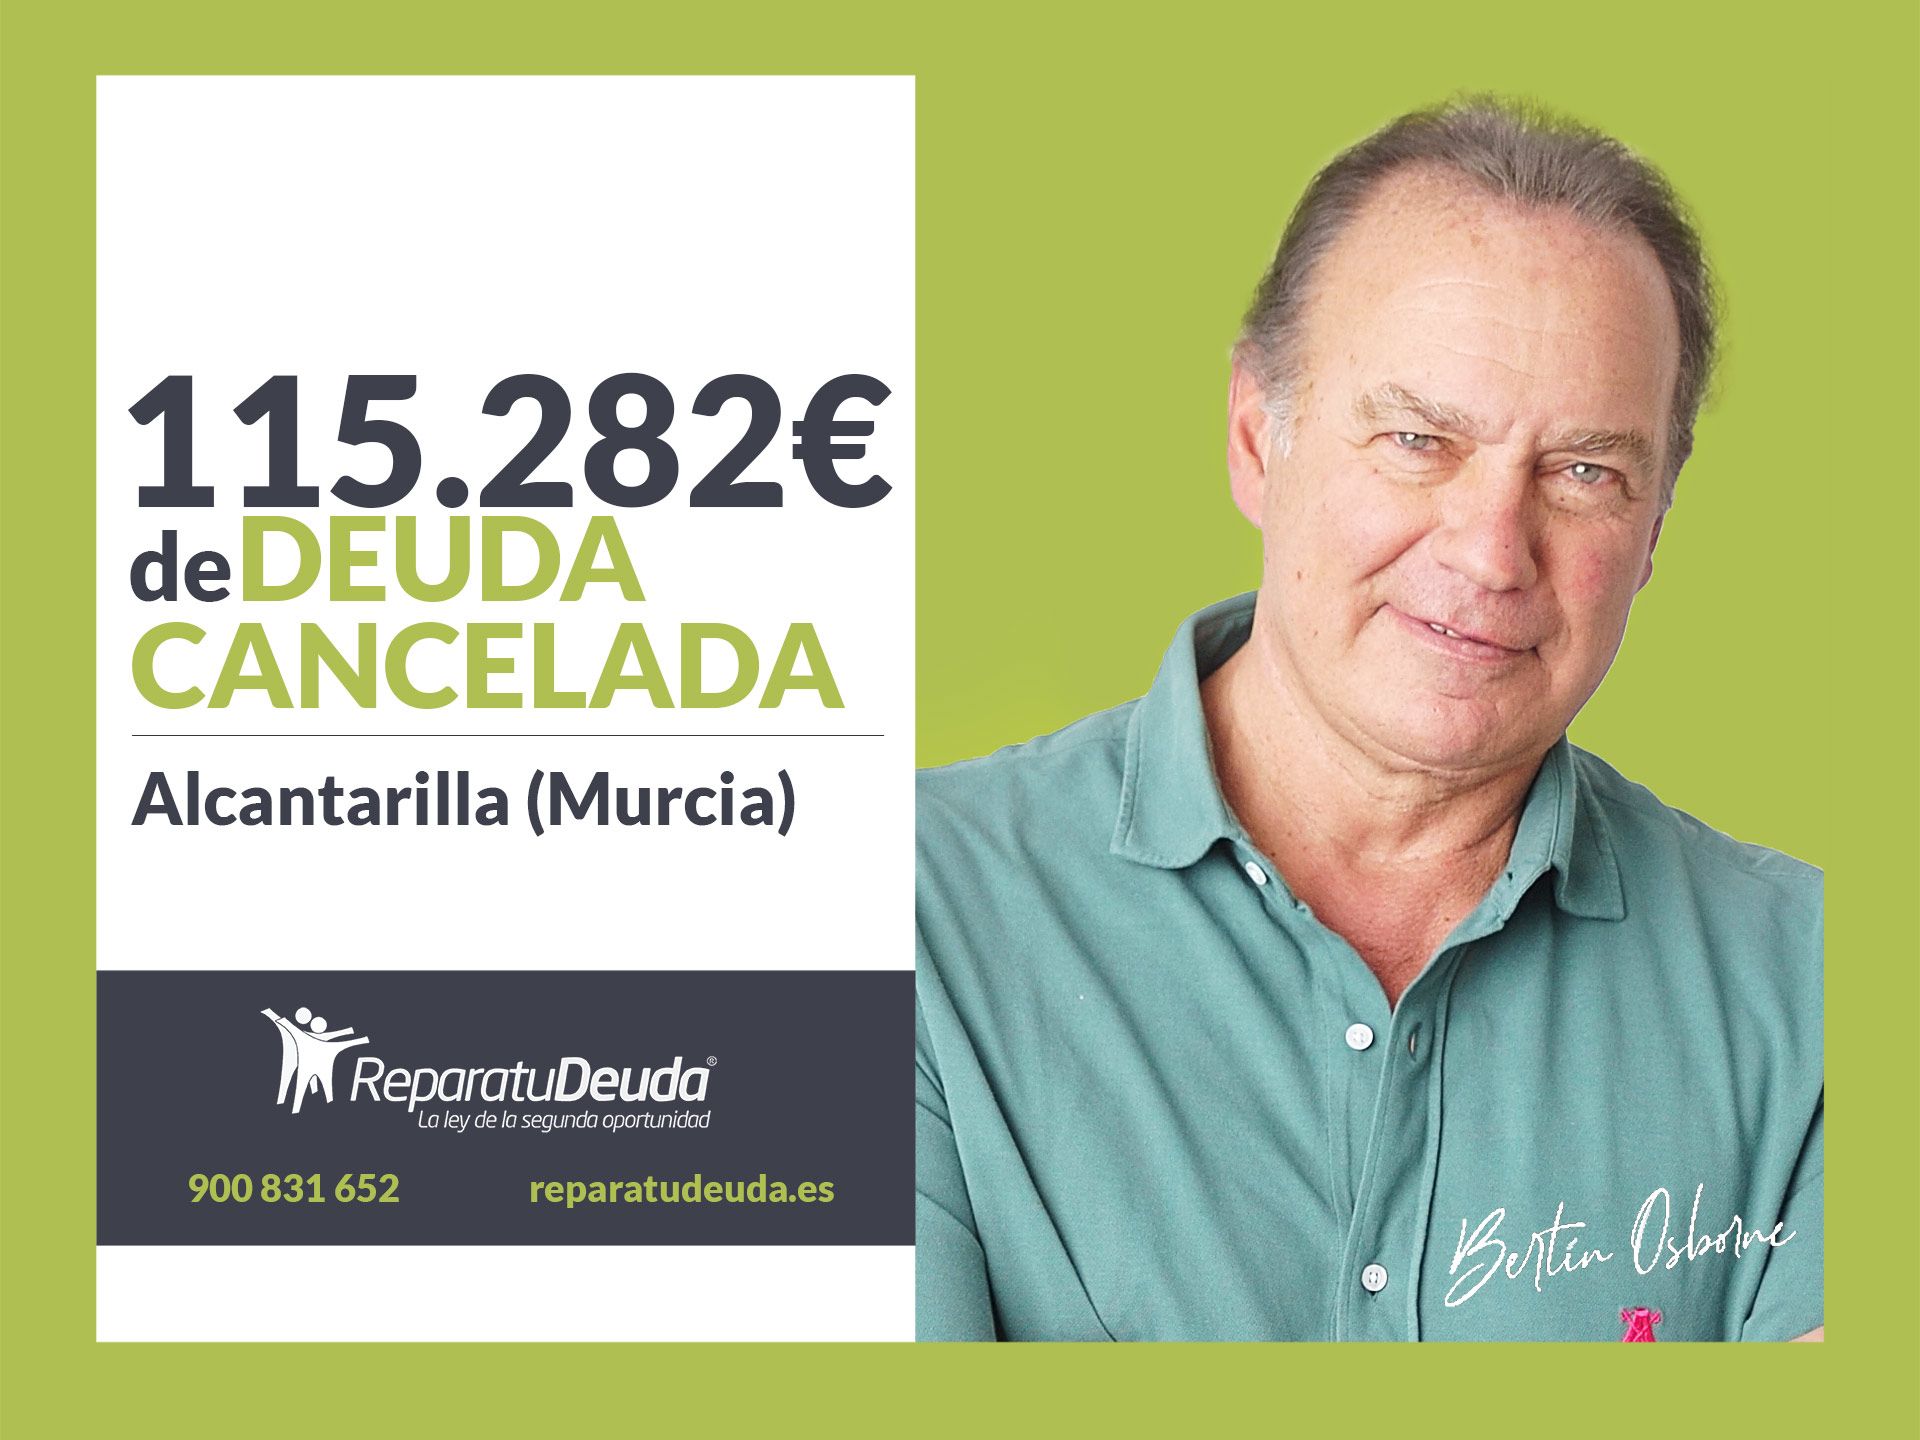 Repara tu Deuda Abogados cancela 115.282? en Alcantarilla (Murcia) con la Ley de la Segunda Oportunidad